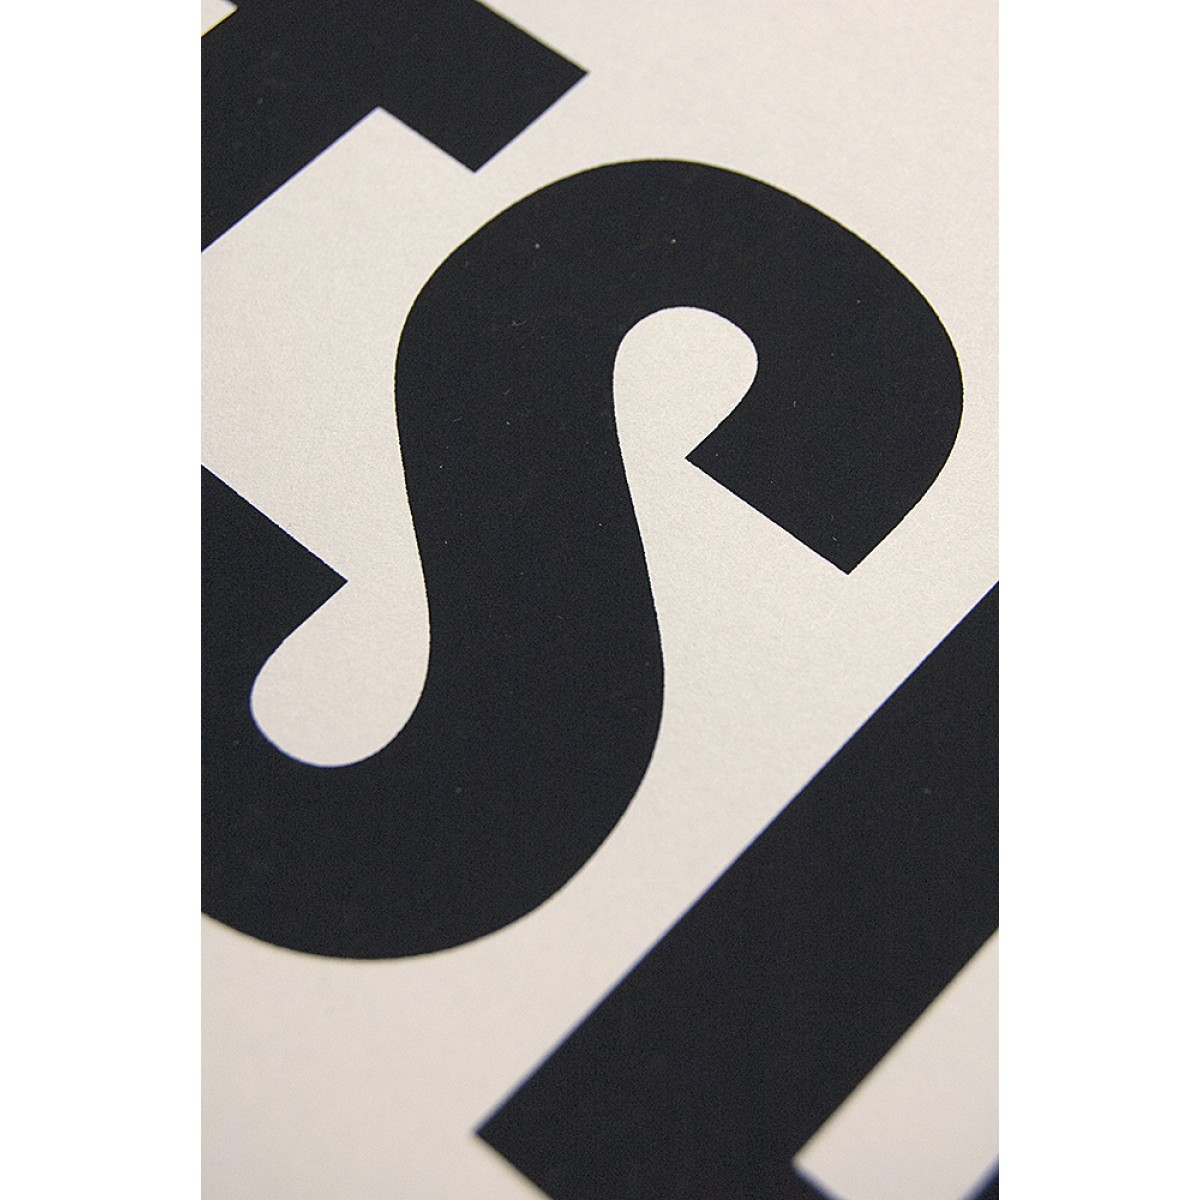 Buchstabenort Potsdam Stadtteile-Poster Typografie